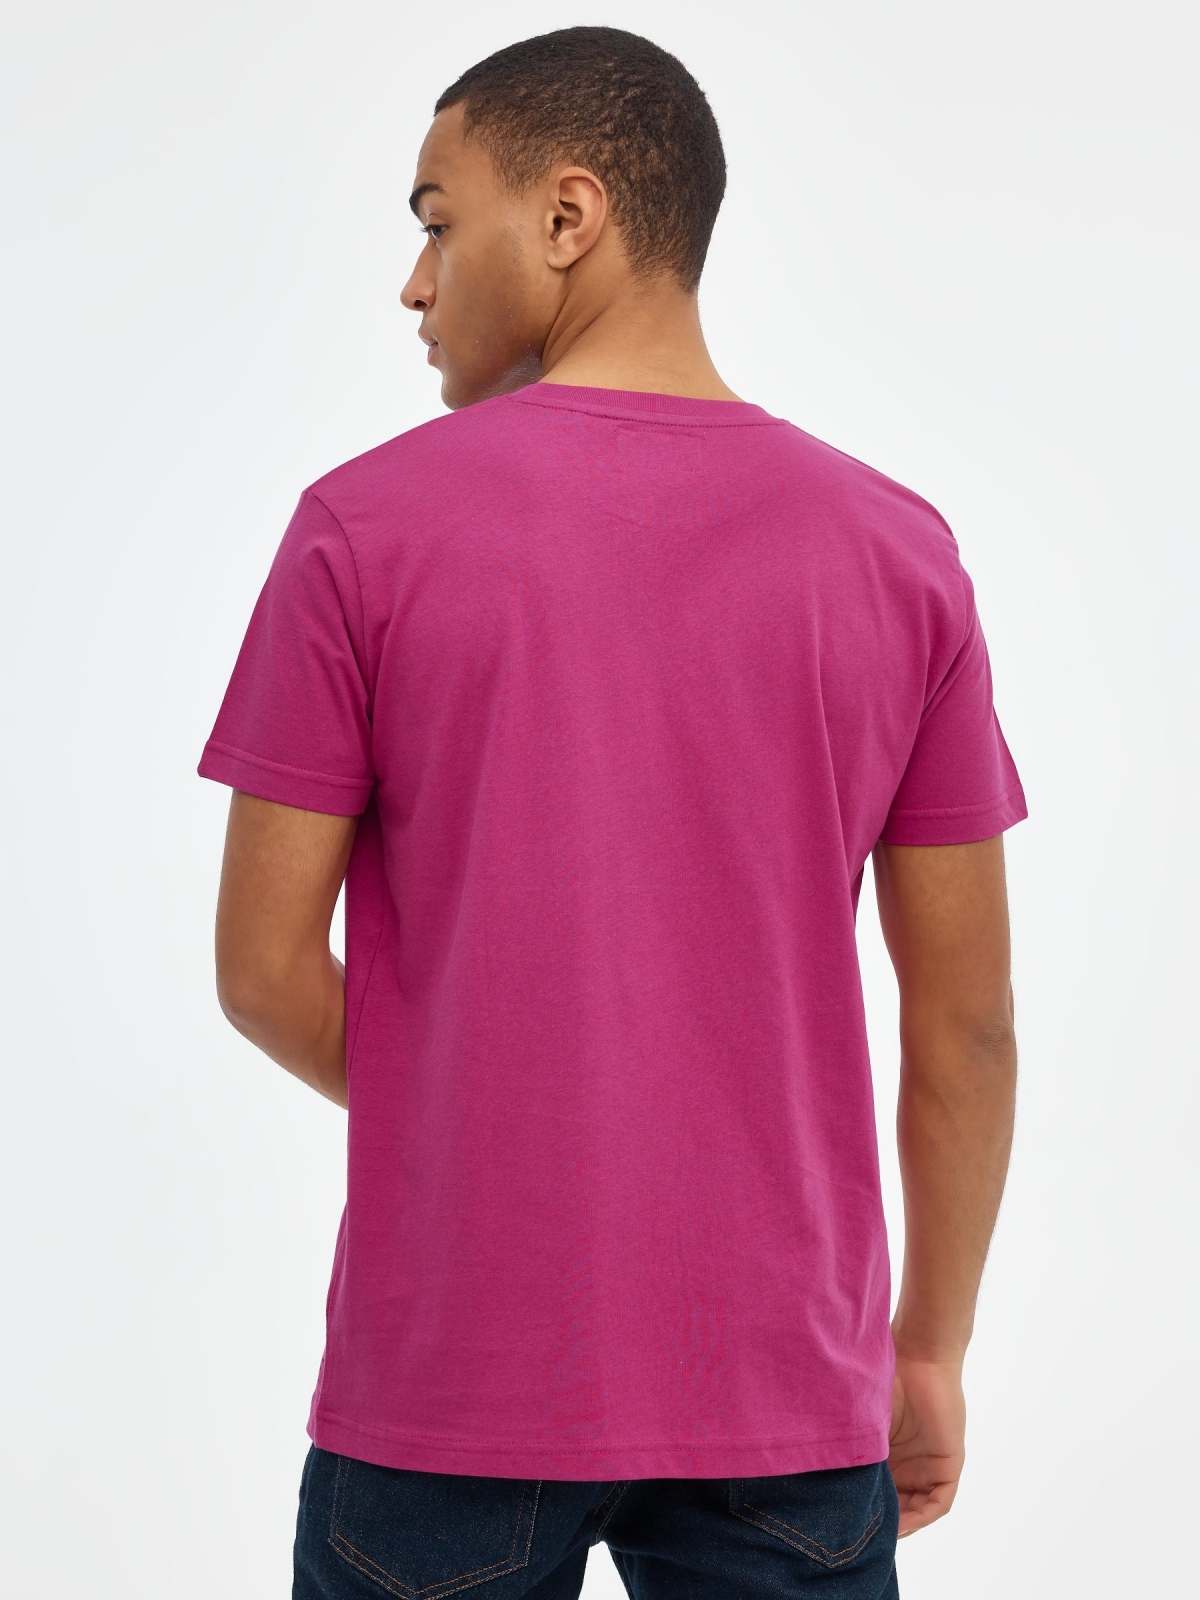 Basic short sleeve t-shirt fuchsia middle back view